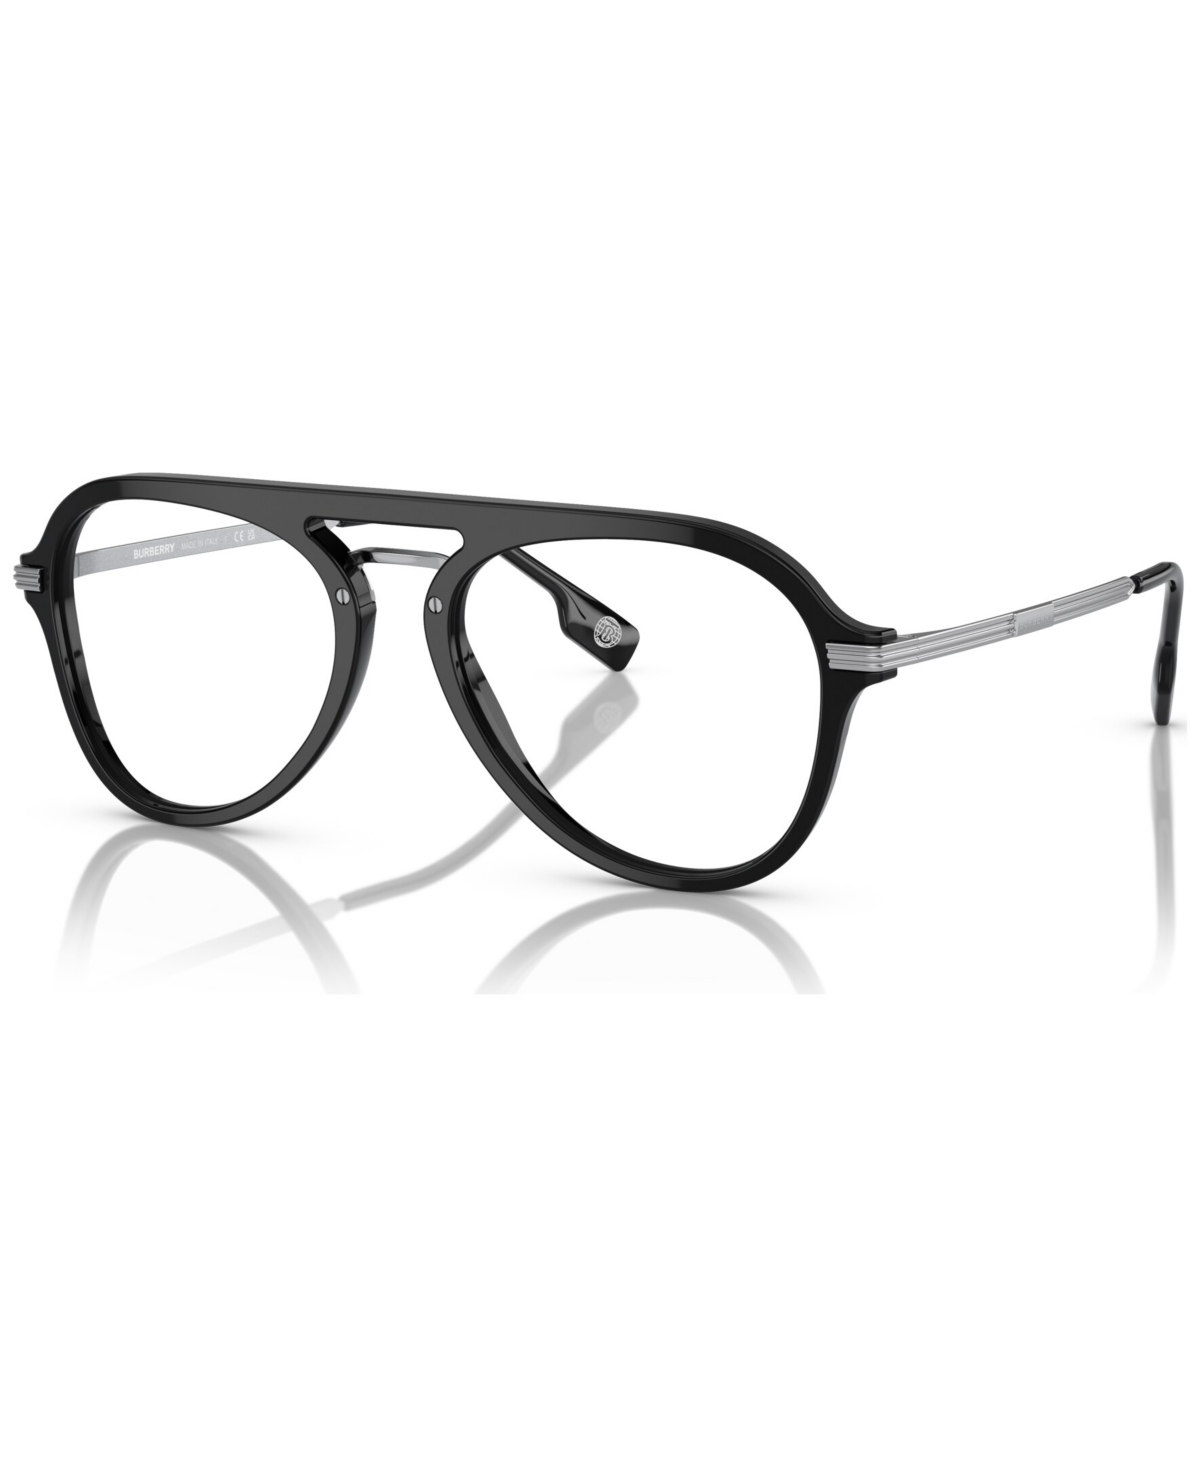 Men's Pilot Eyeglasses, BE2377 55 - Black